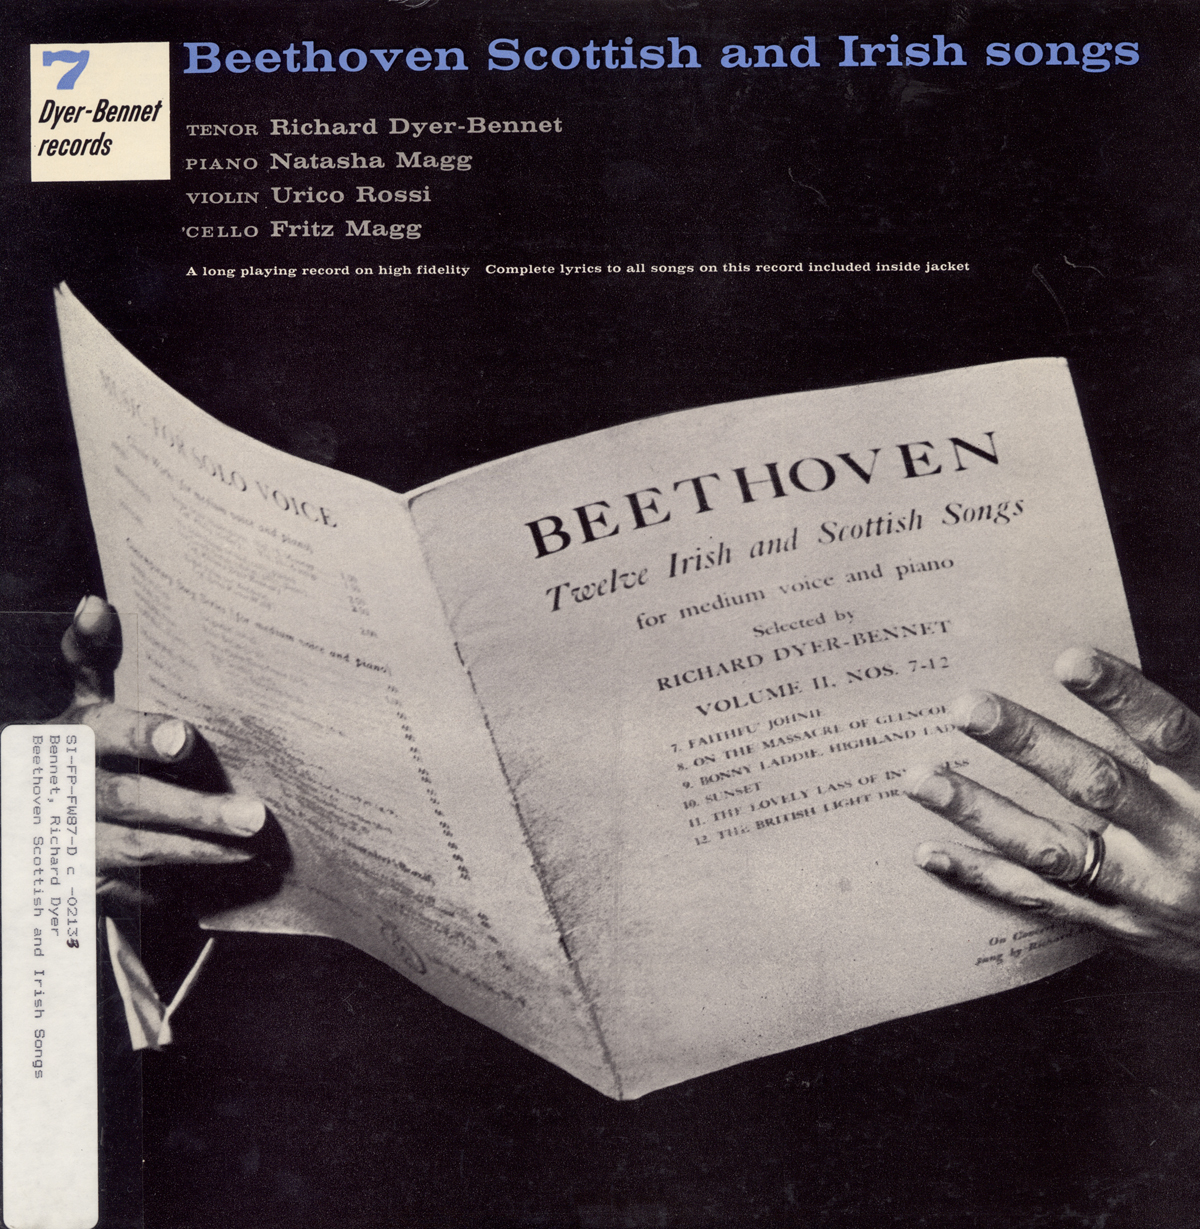 VOLUME 7: BEETHOVEN SCOTTISH AND IRISH SONGS